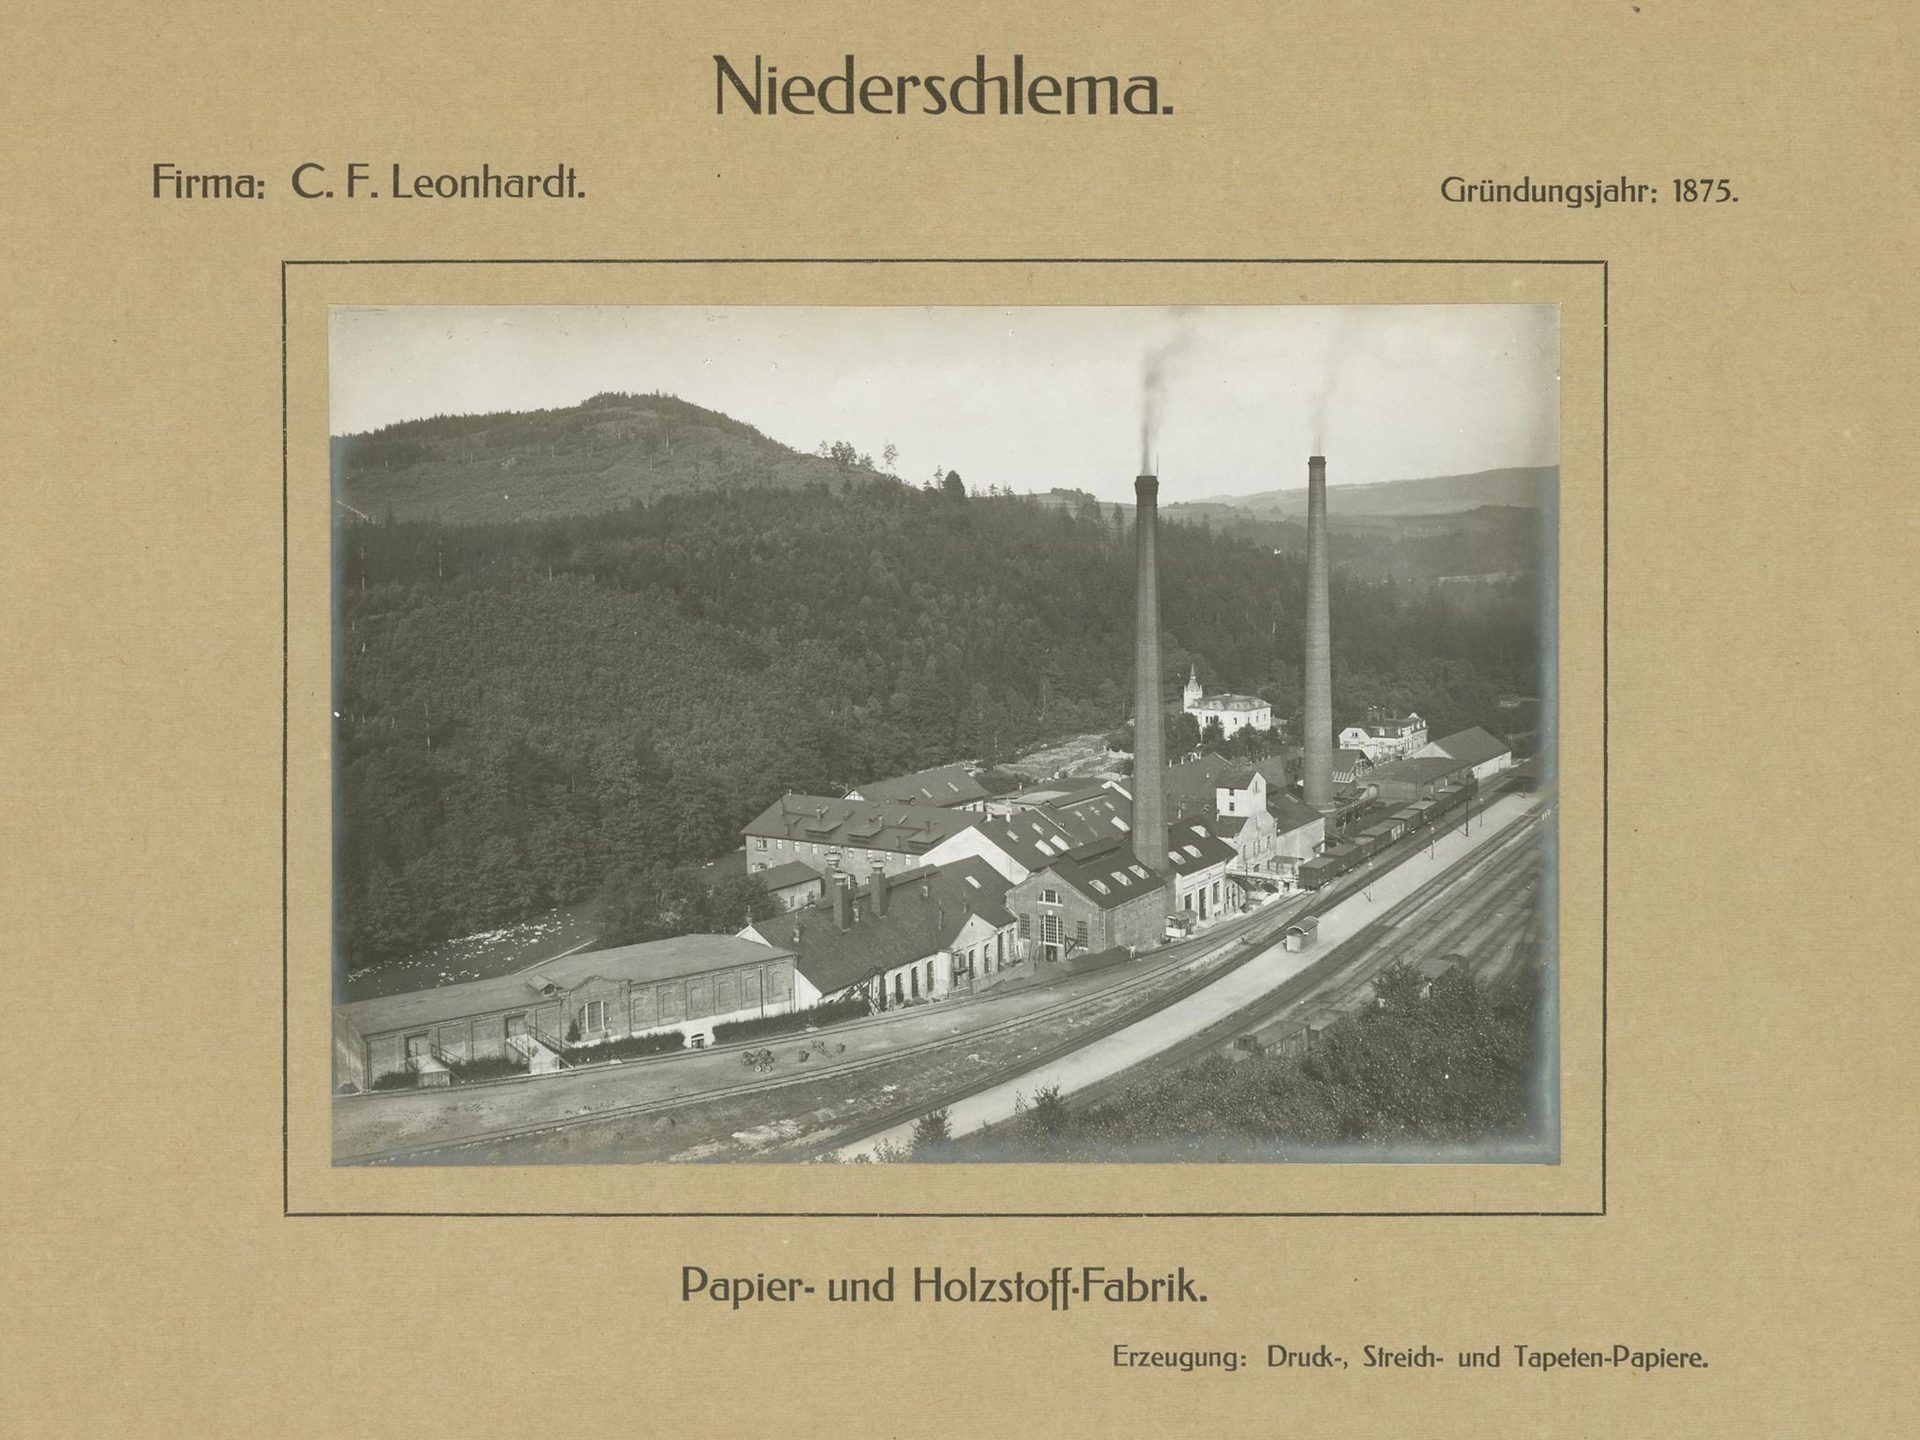 Papier- und Holzstoff-Fabrik C. F. Leonhardt, Niederschlema